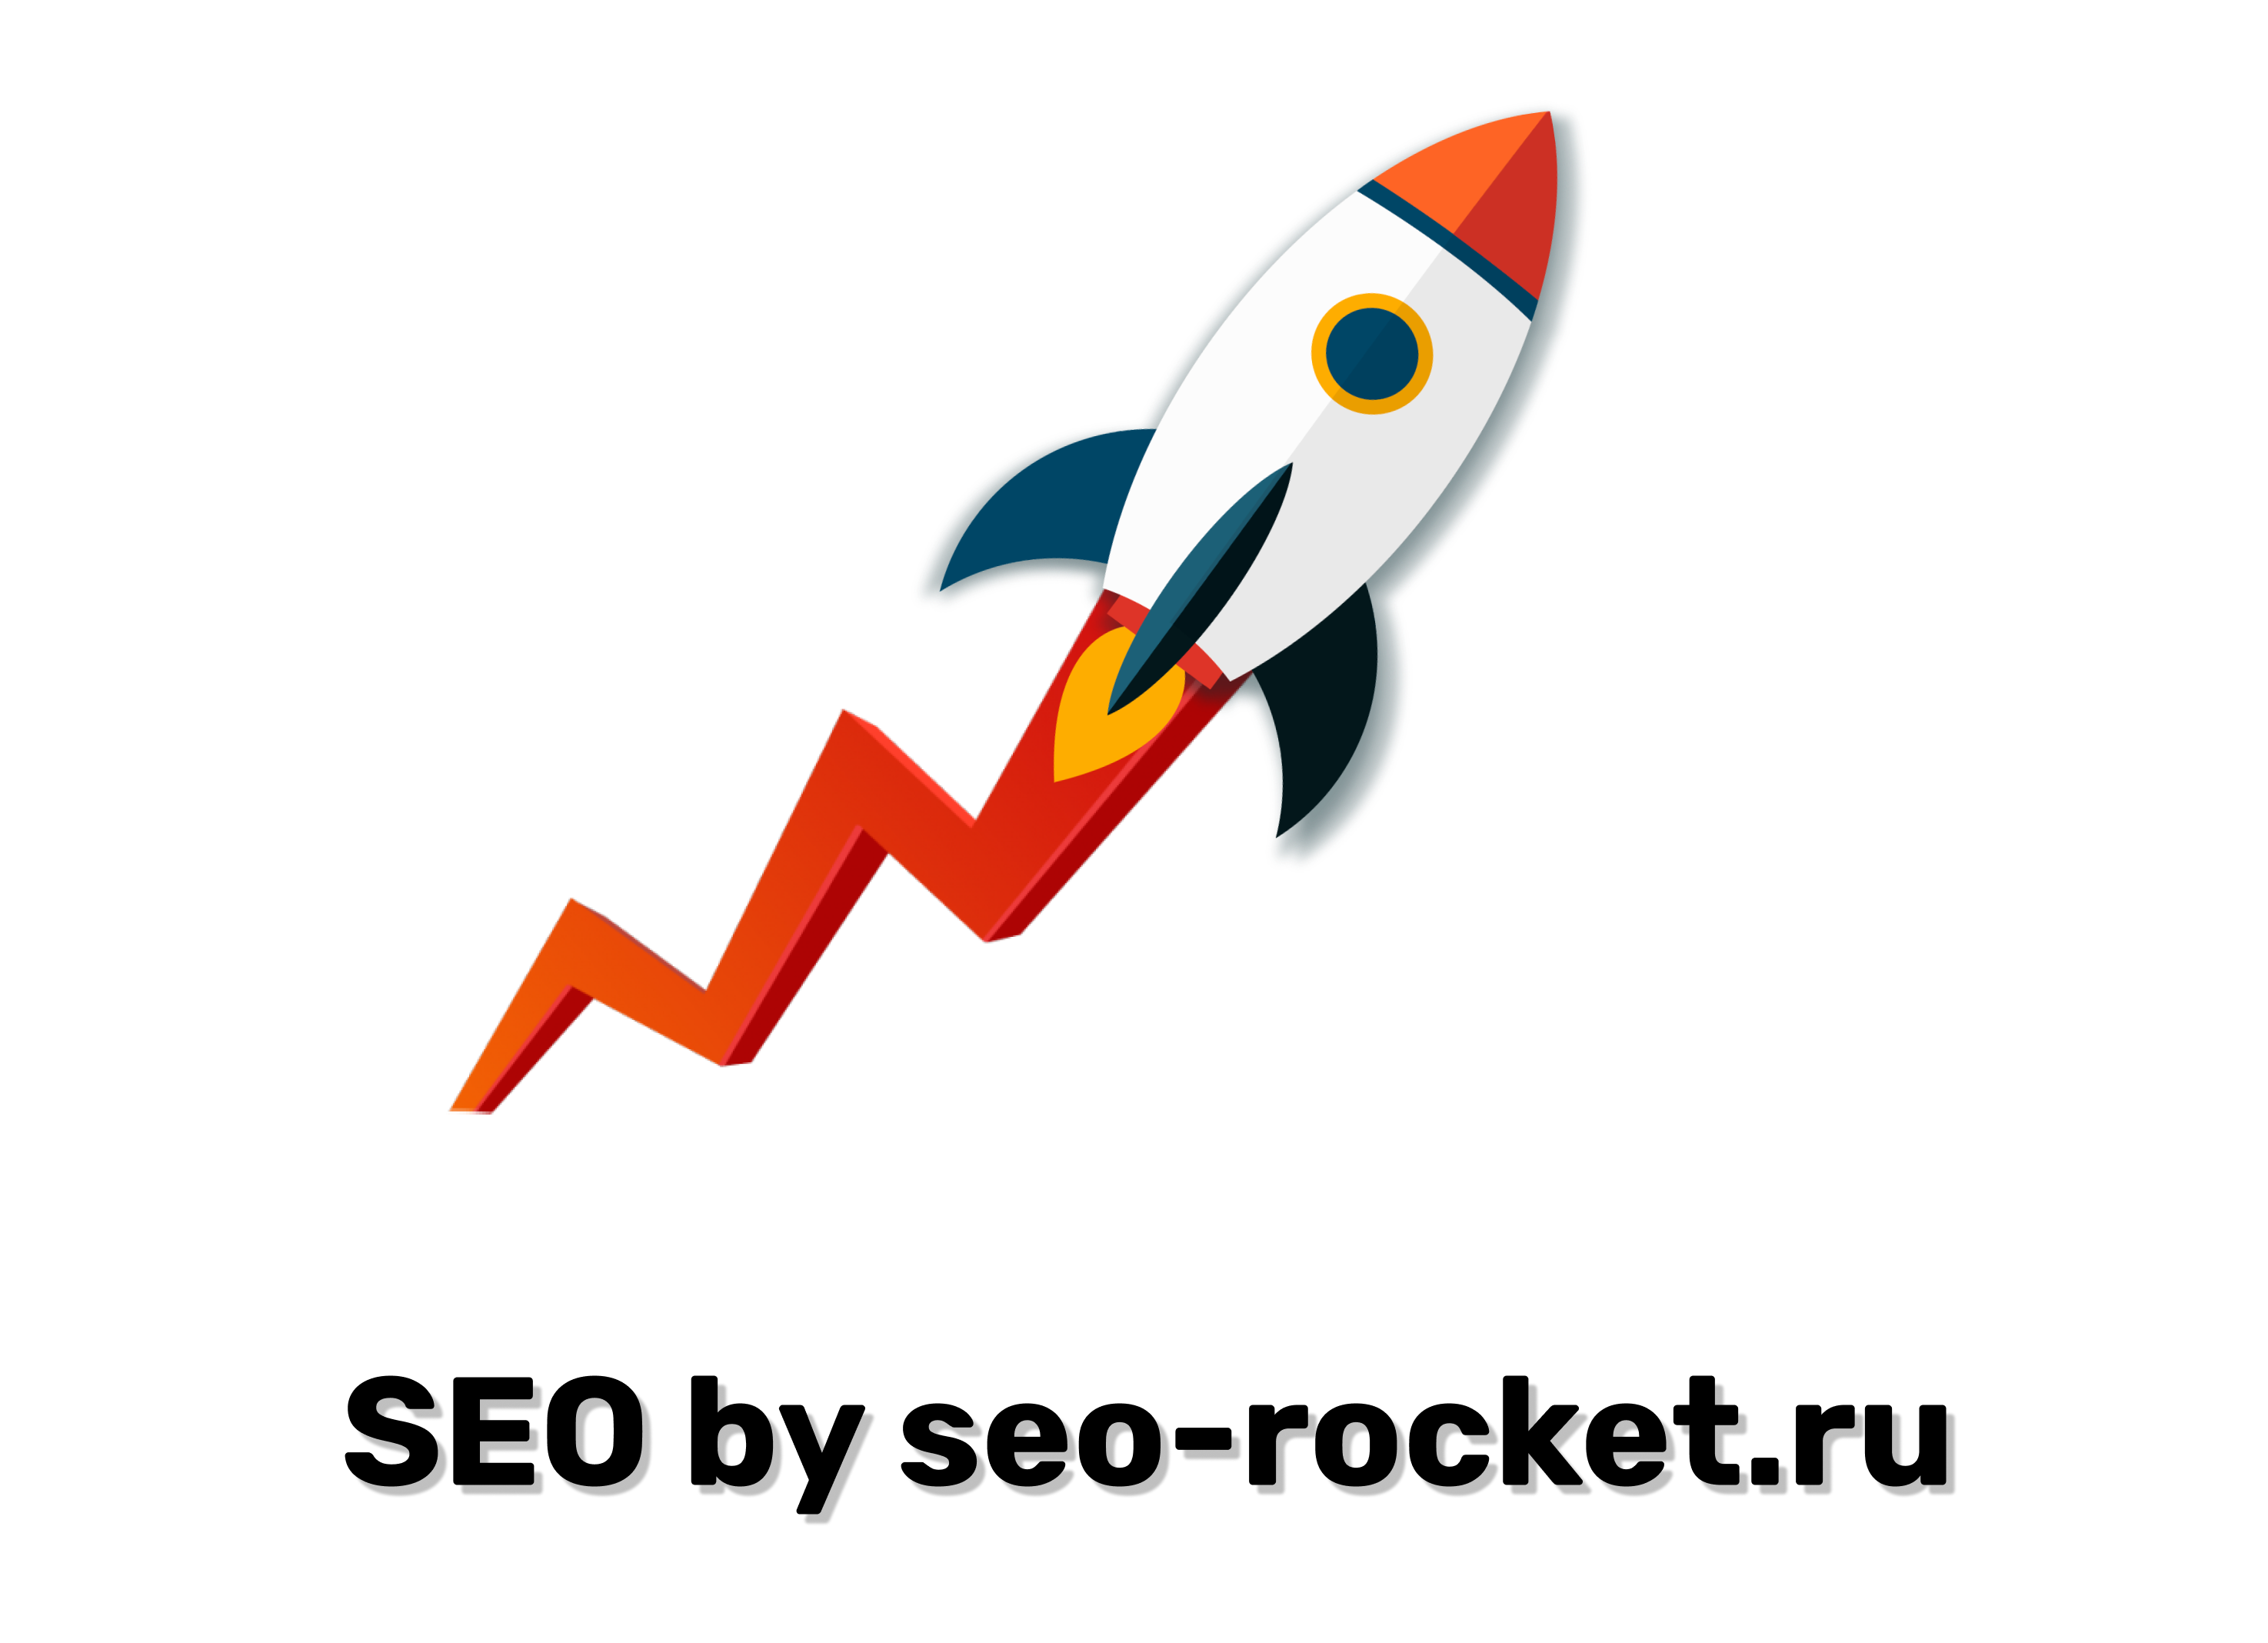 SEO продвижение сайта seo-rocket.ru